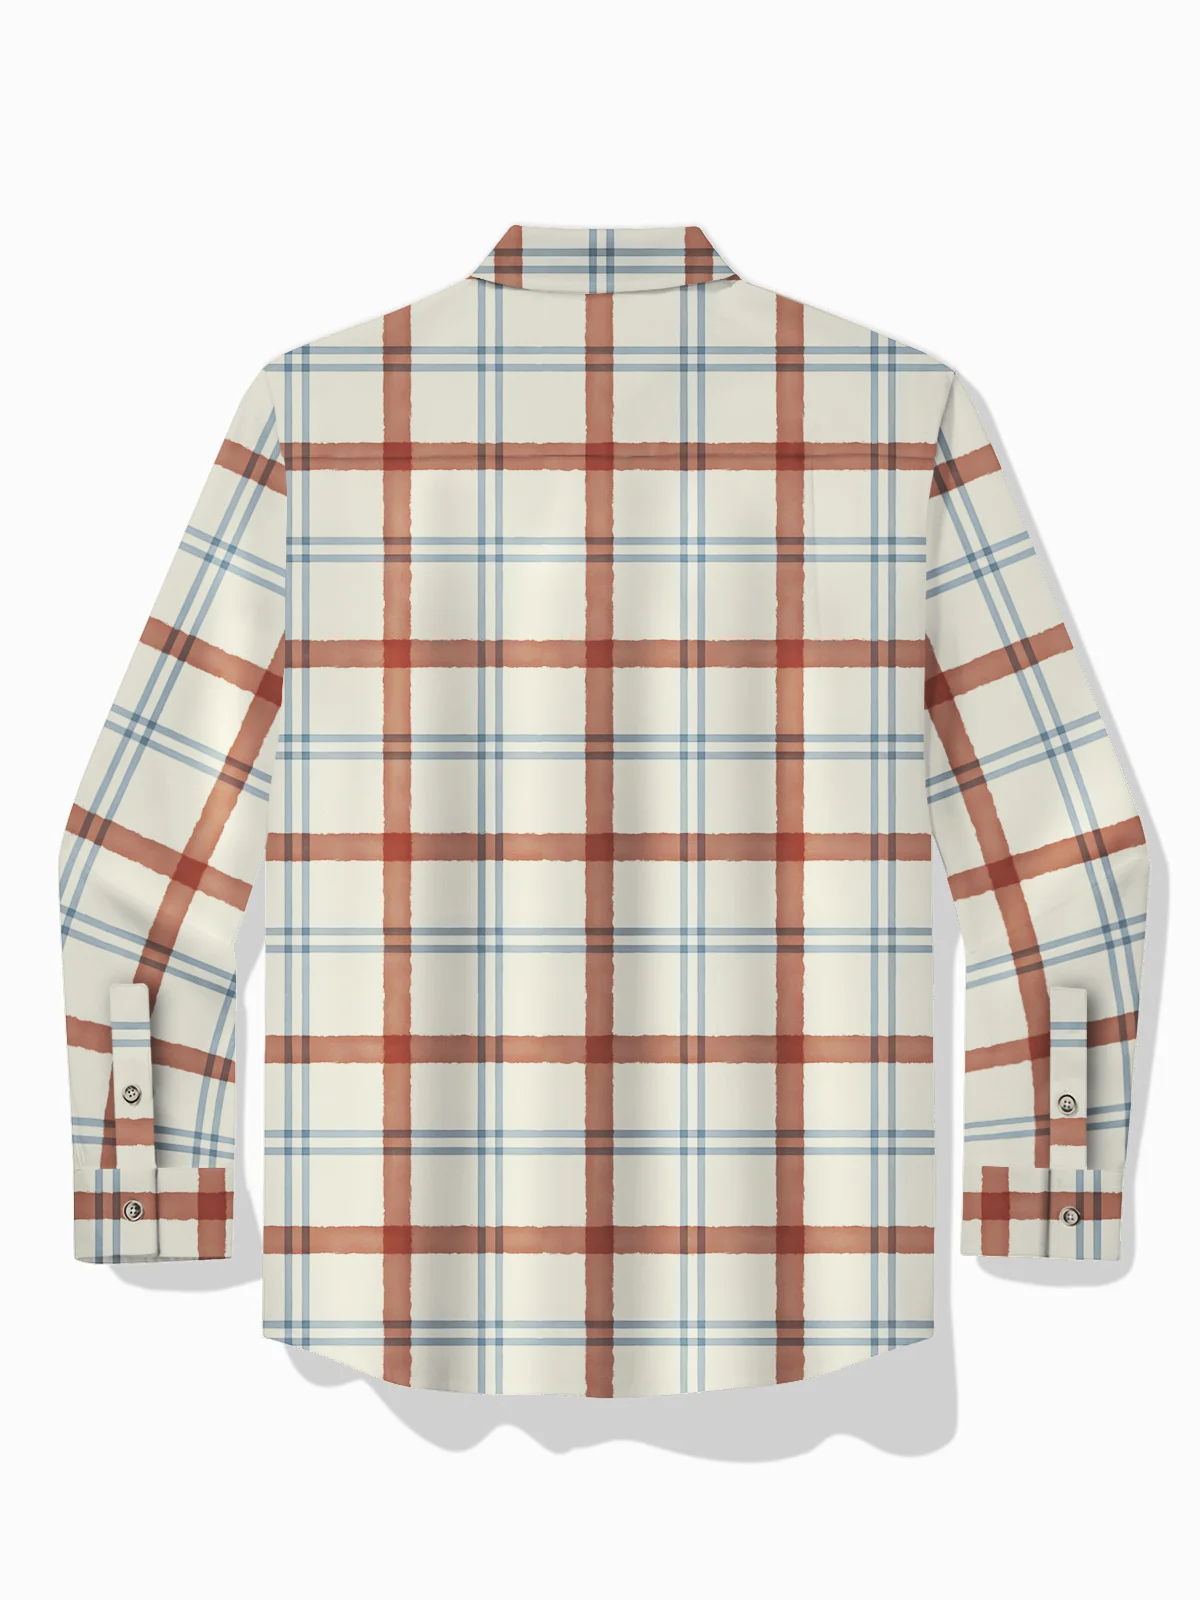 Royaura® Basic Check Print Men's Hawaiian Long Sleeve Shirt Easy Care Pocket Camping Shirt